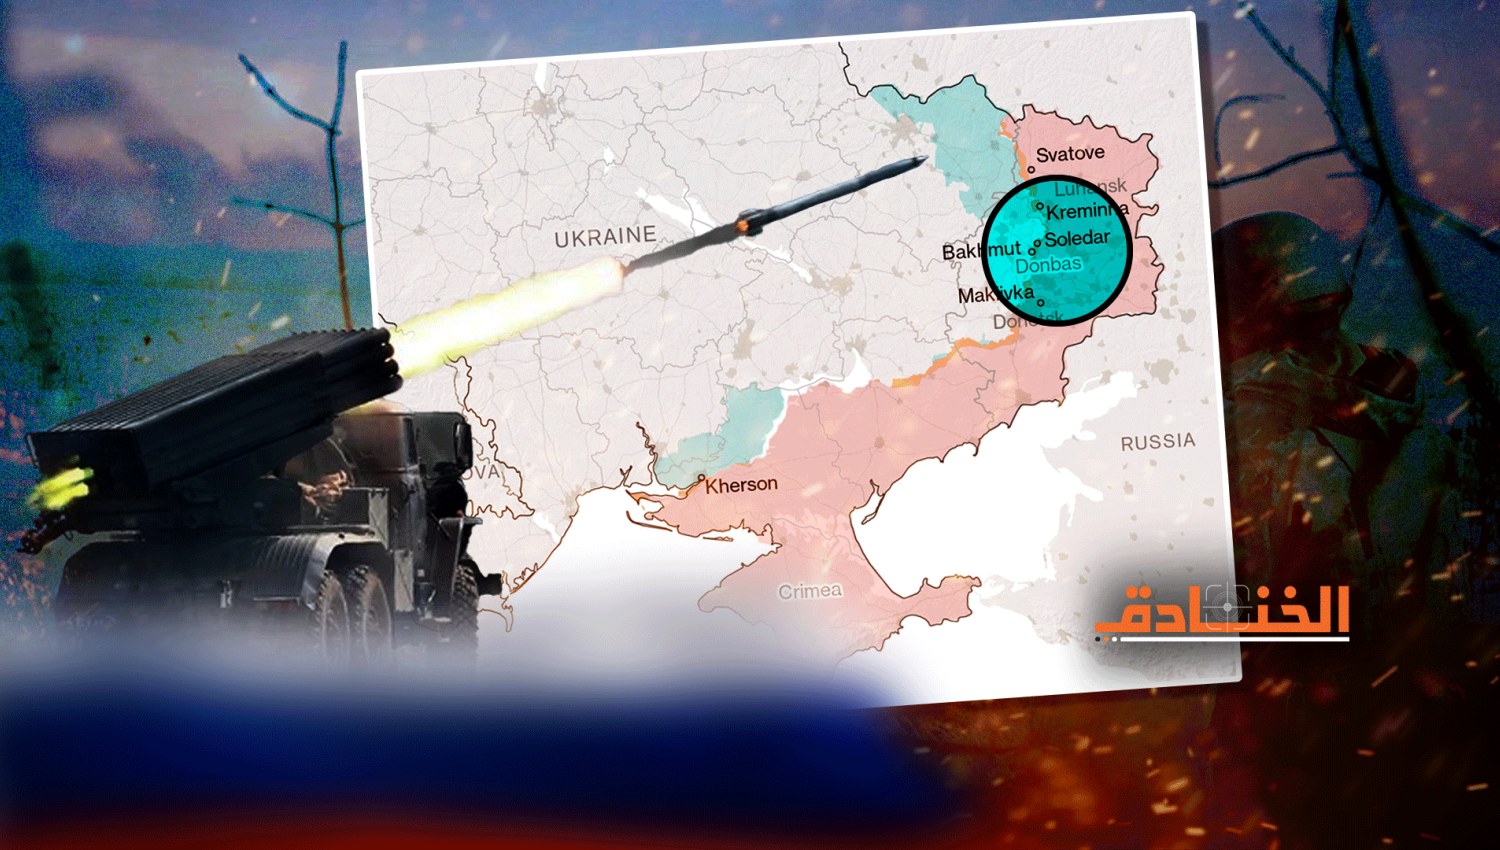 ماذا بعد السيطرة الروسية على سوليدار في أوكرانيا؟